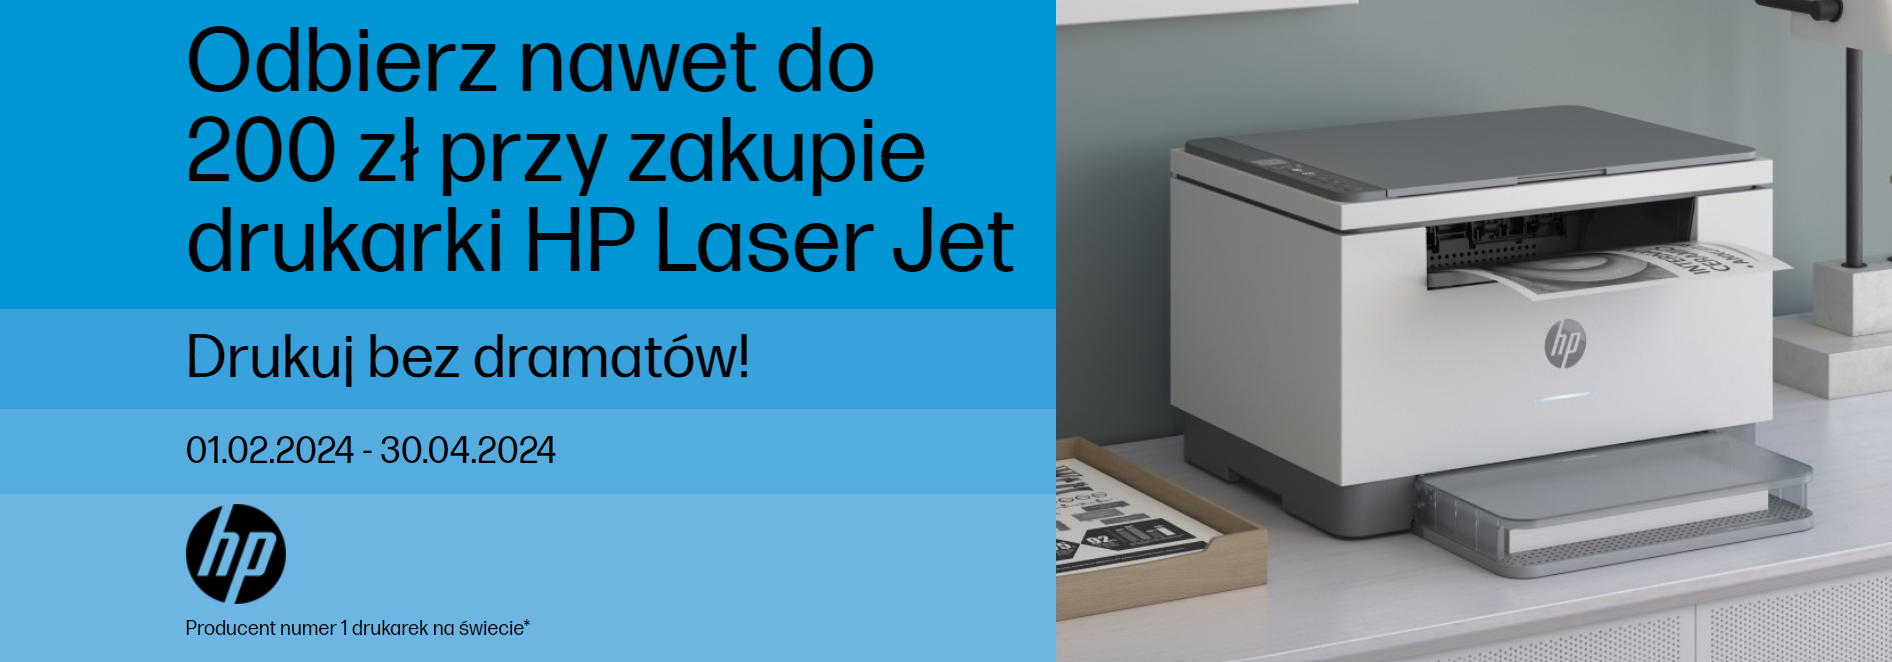 Promocja HP LaserJet